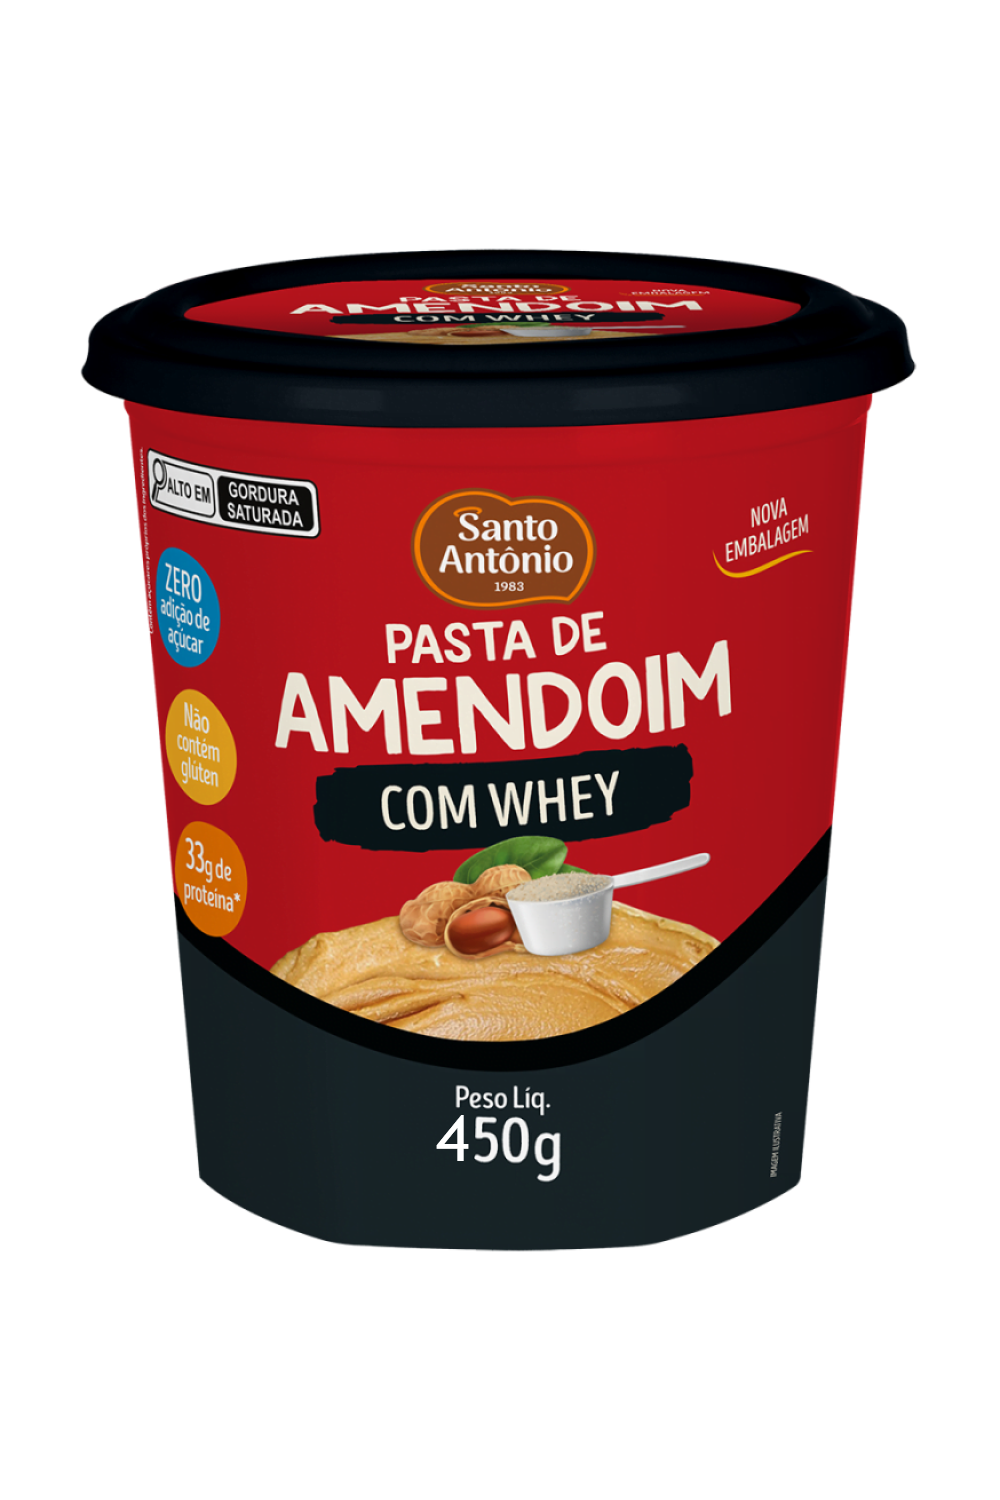 dsa-pasta-de-amendoim-500g-whey-thumb-874x1024-644d0f549248e.png